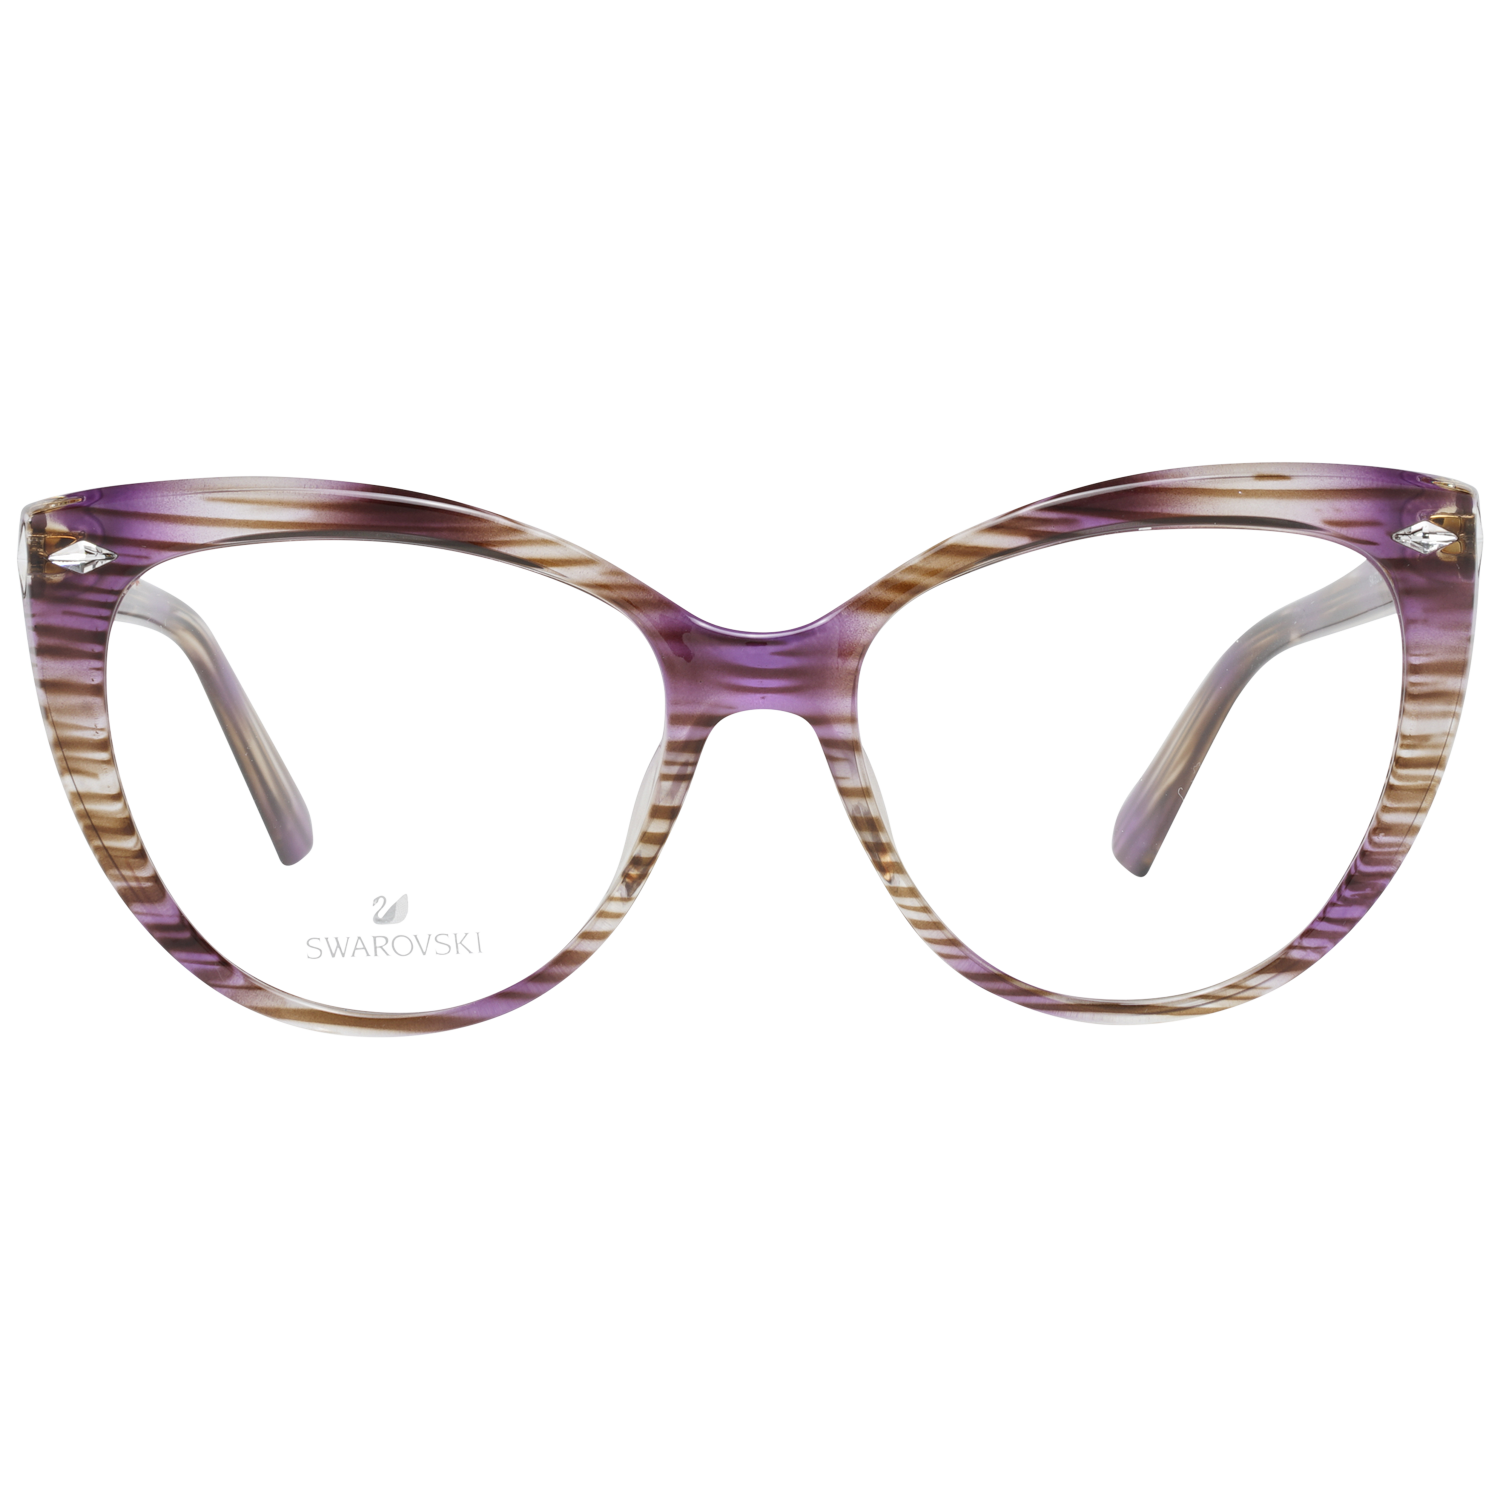 Swarovski Frames Swarovski Optical Frame SK5270 083 53 Eyeglasses Eyewear UK USA Australia 